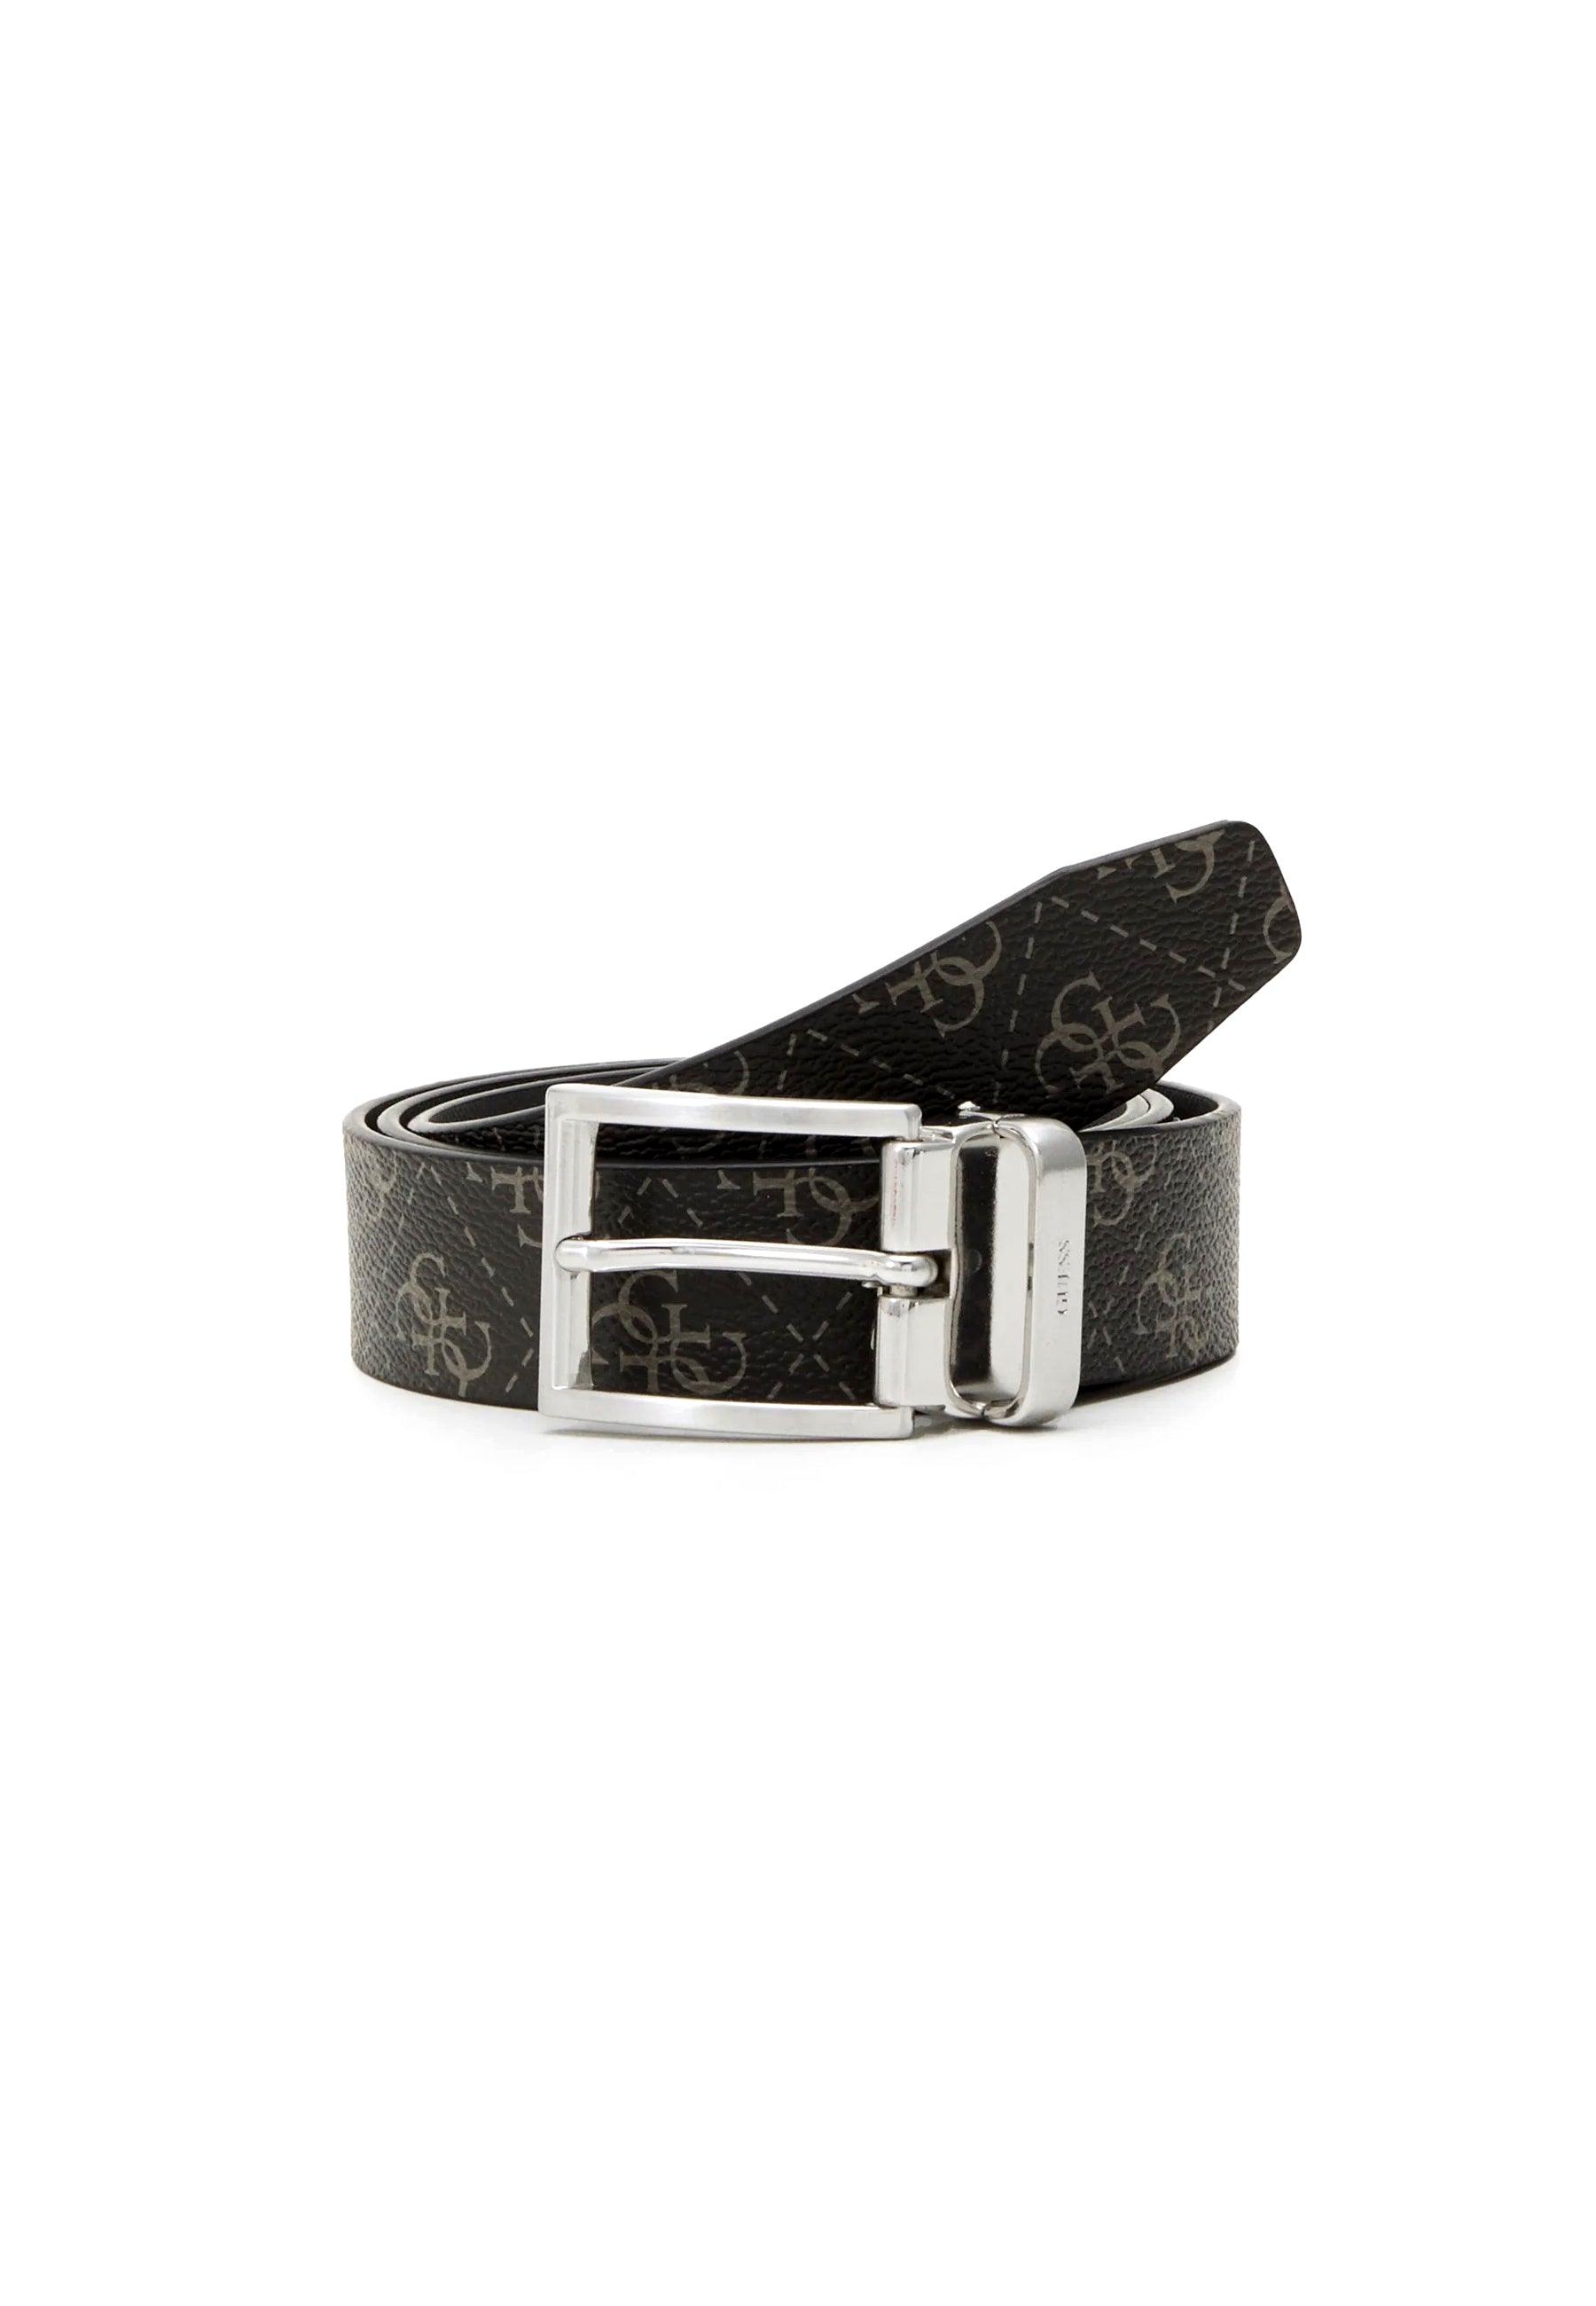 GUESS Cintura Loghi Uomo Dark Black BM7541LEA35 - Sandrini Calzature e Abbigliamento